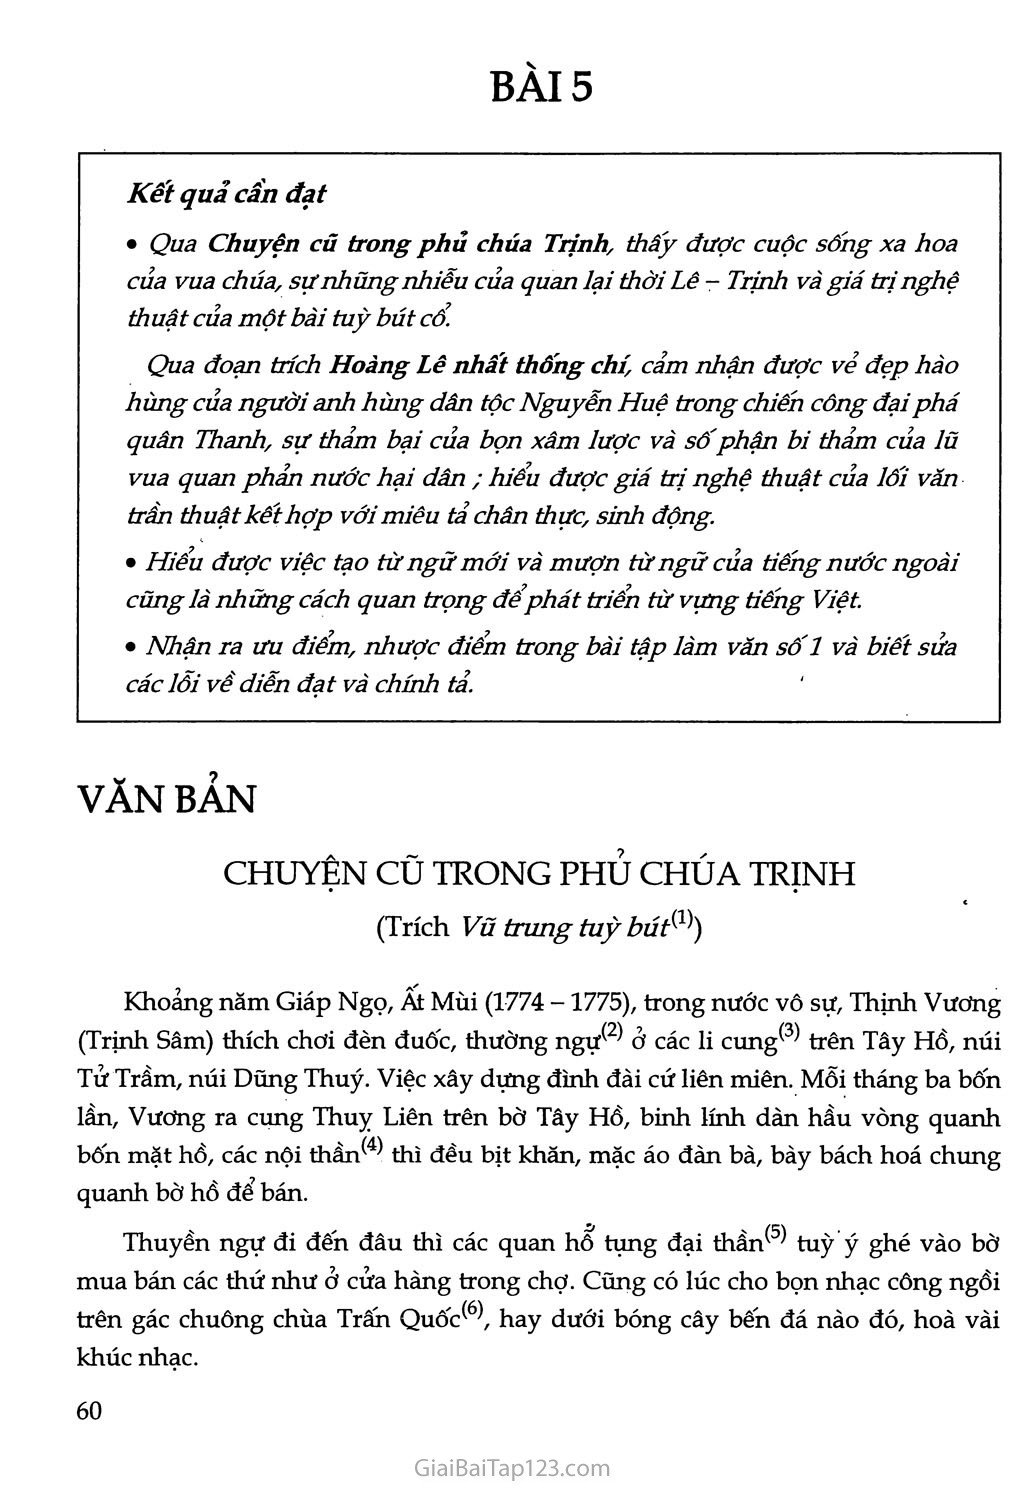 Chuyện cũ trong phủ chúa Trịnh (trích Vũ trung tuỳ bút) trang 1